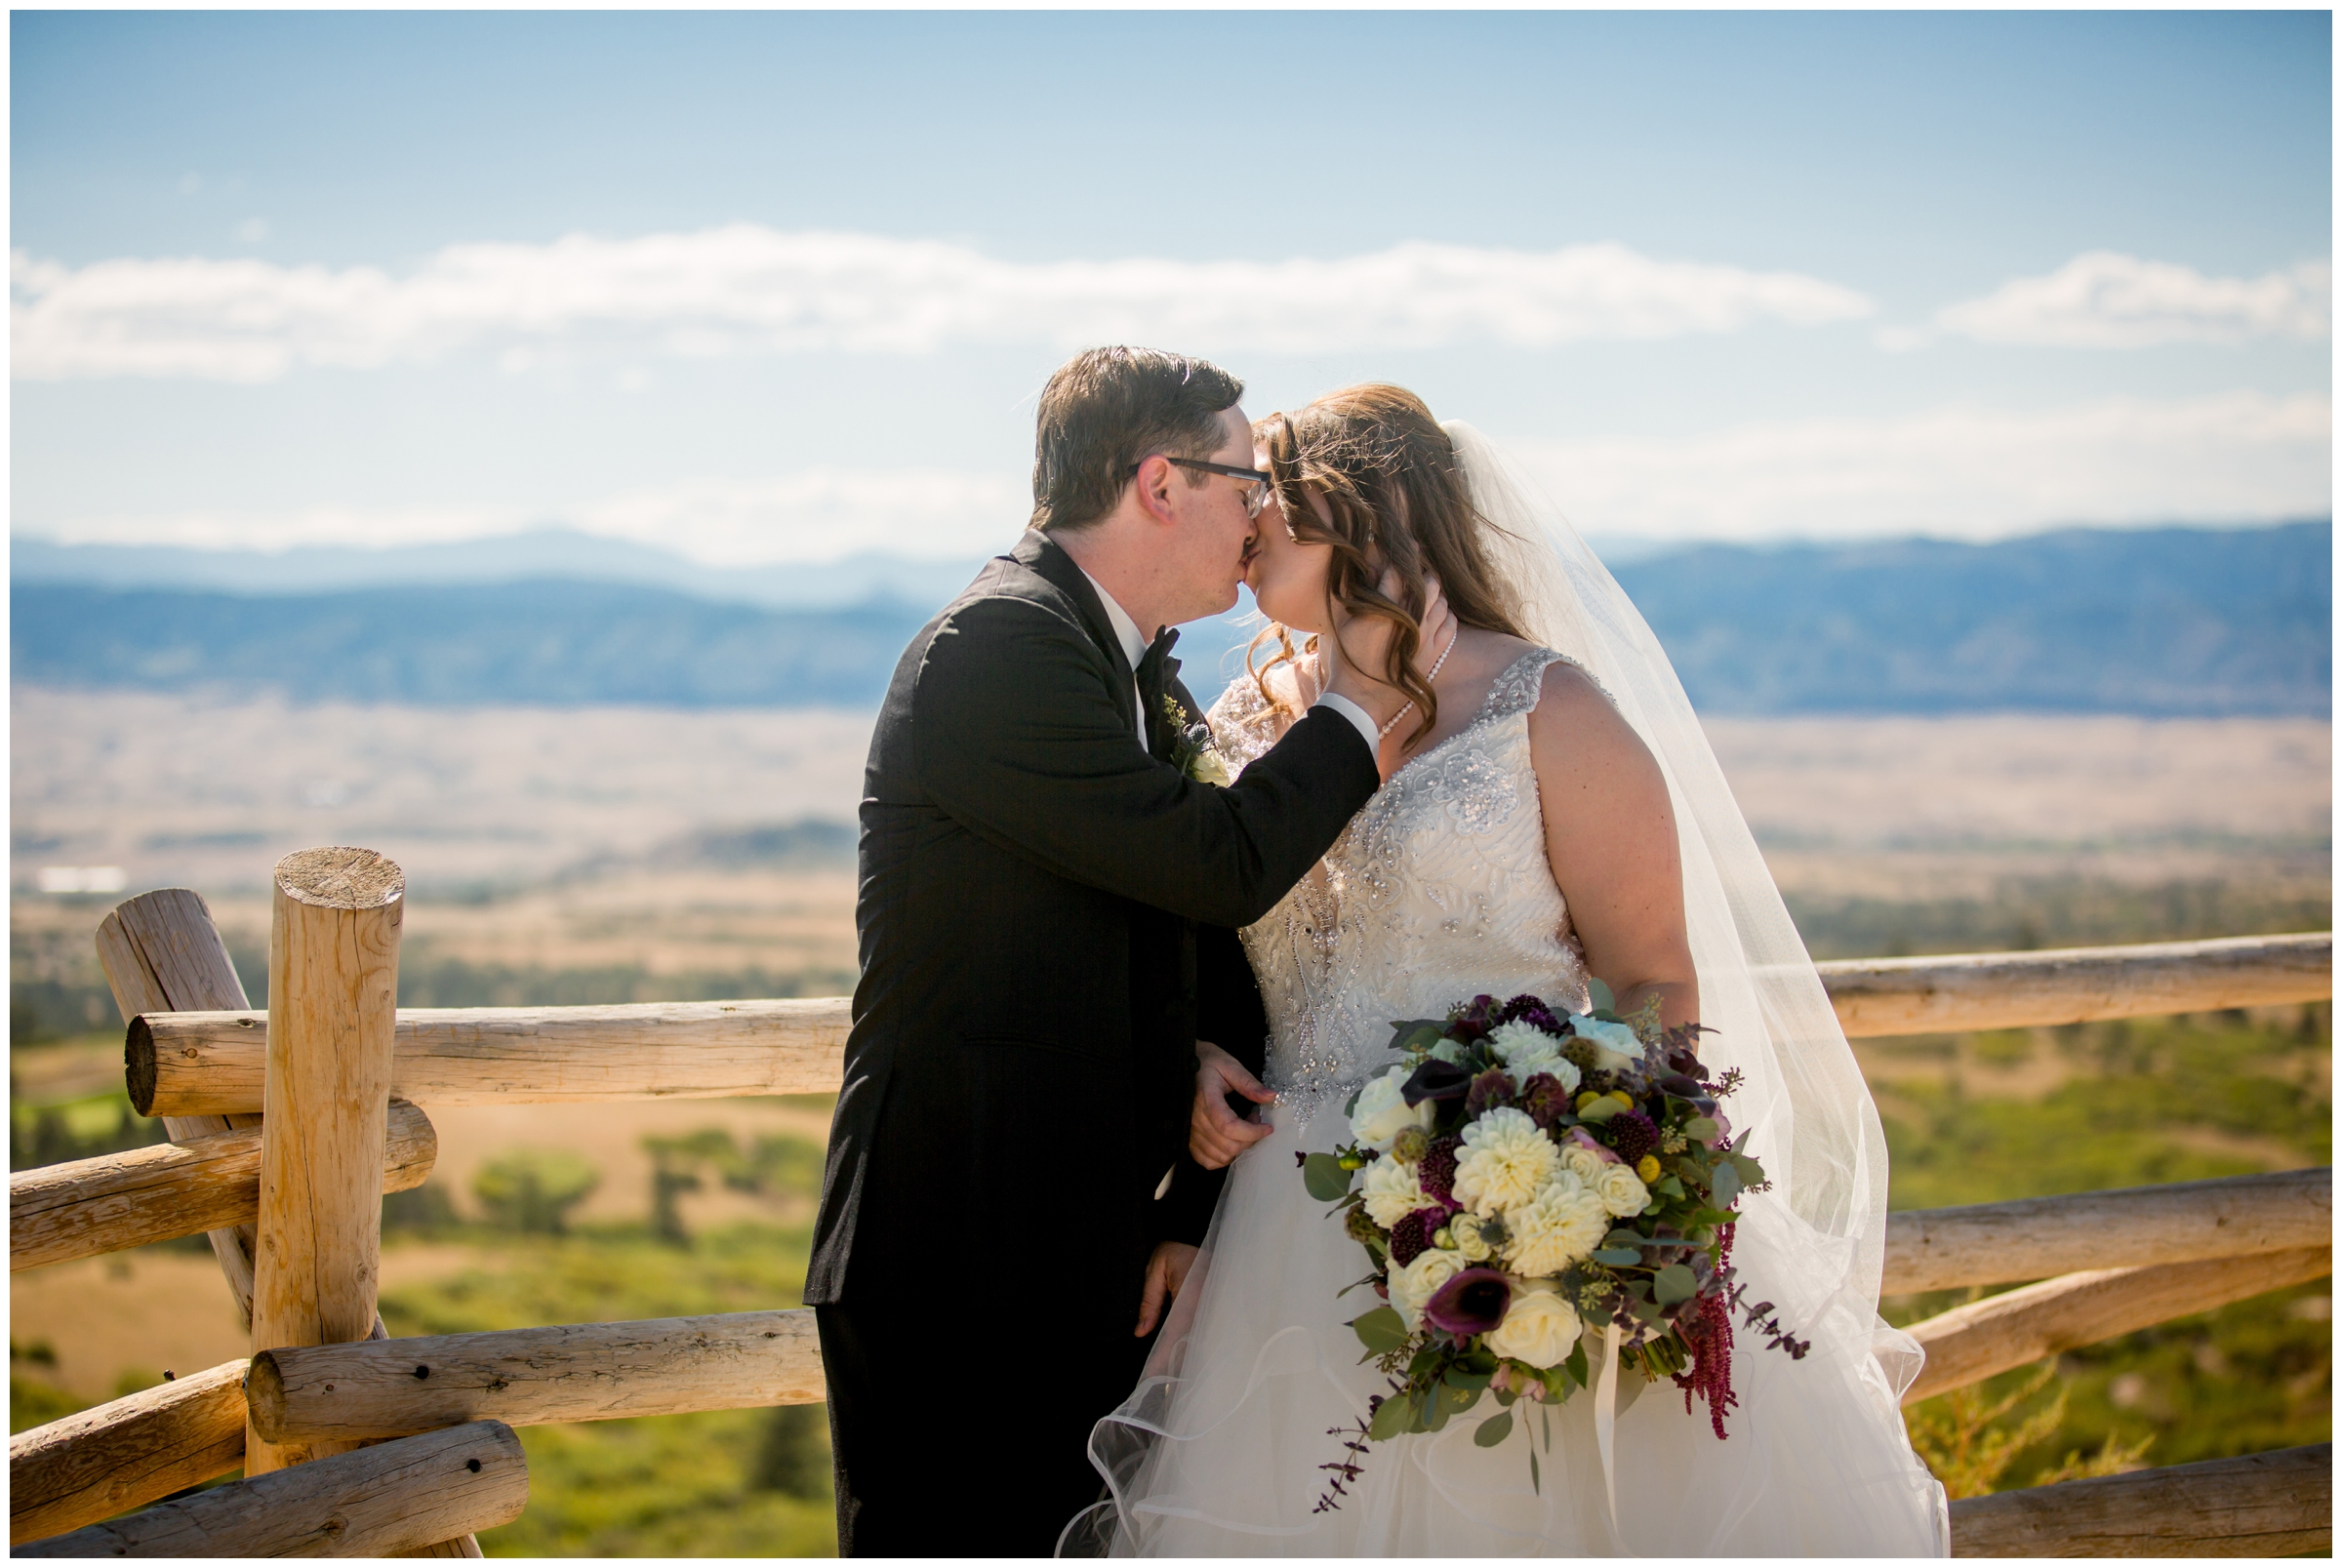 Daniels Park Colorado elopement photography inspiration 